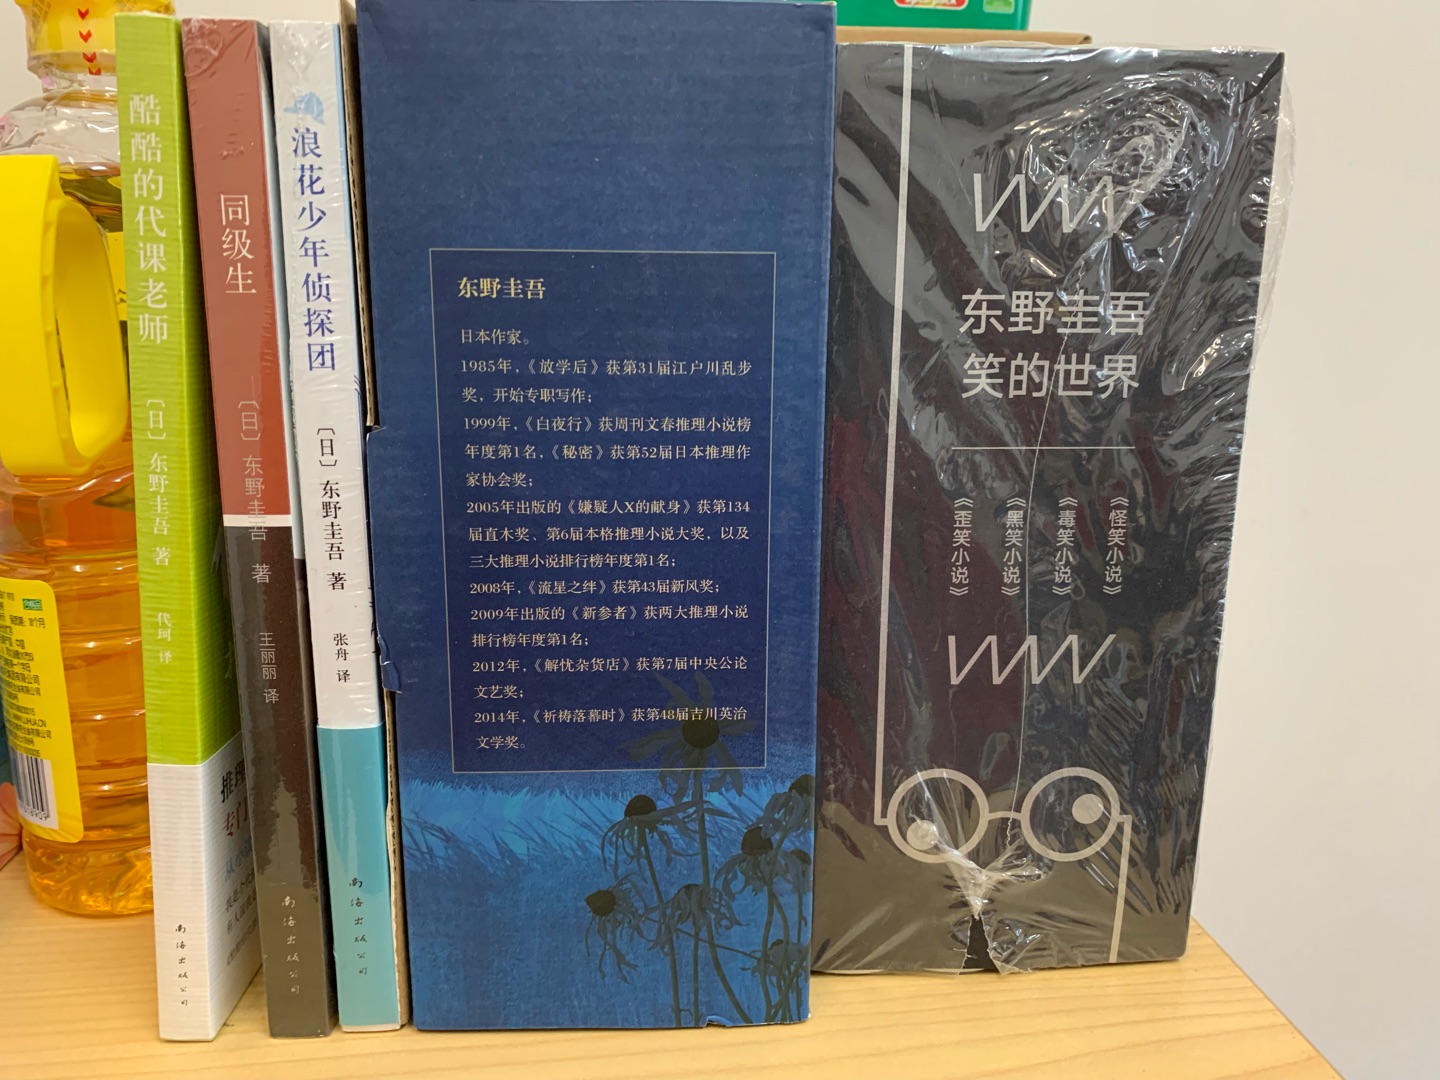 东野圭*的作品一直很喜欢，买书速度和质量都有保证